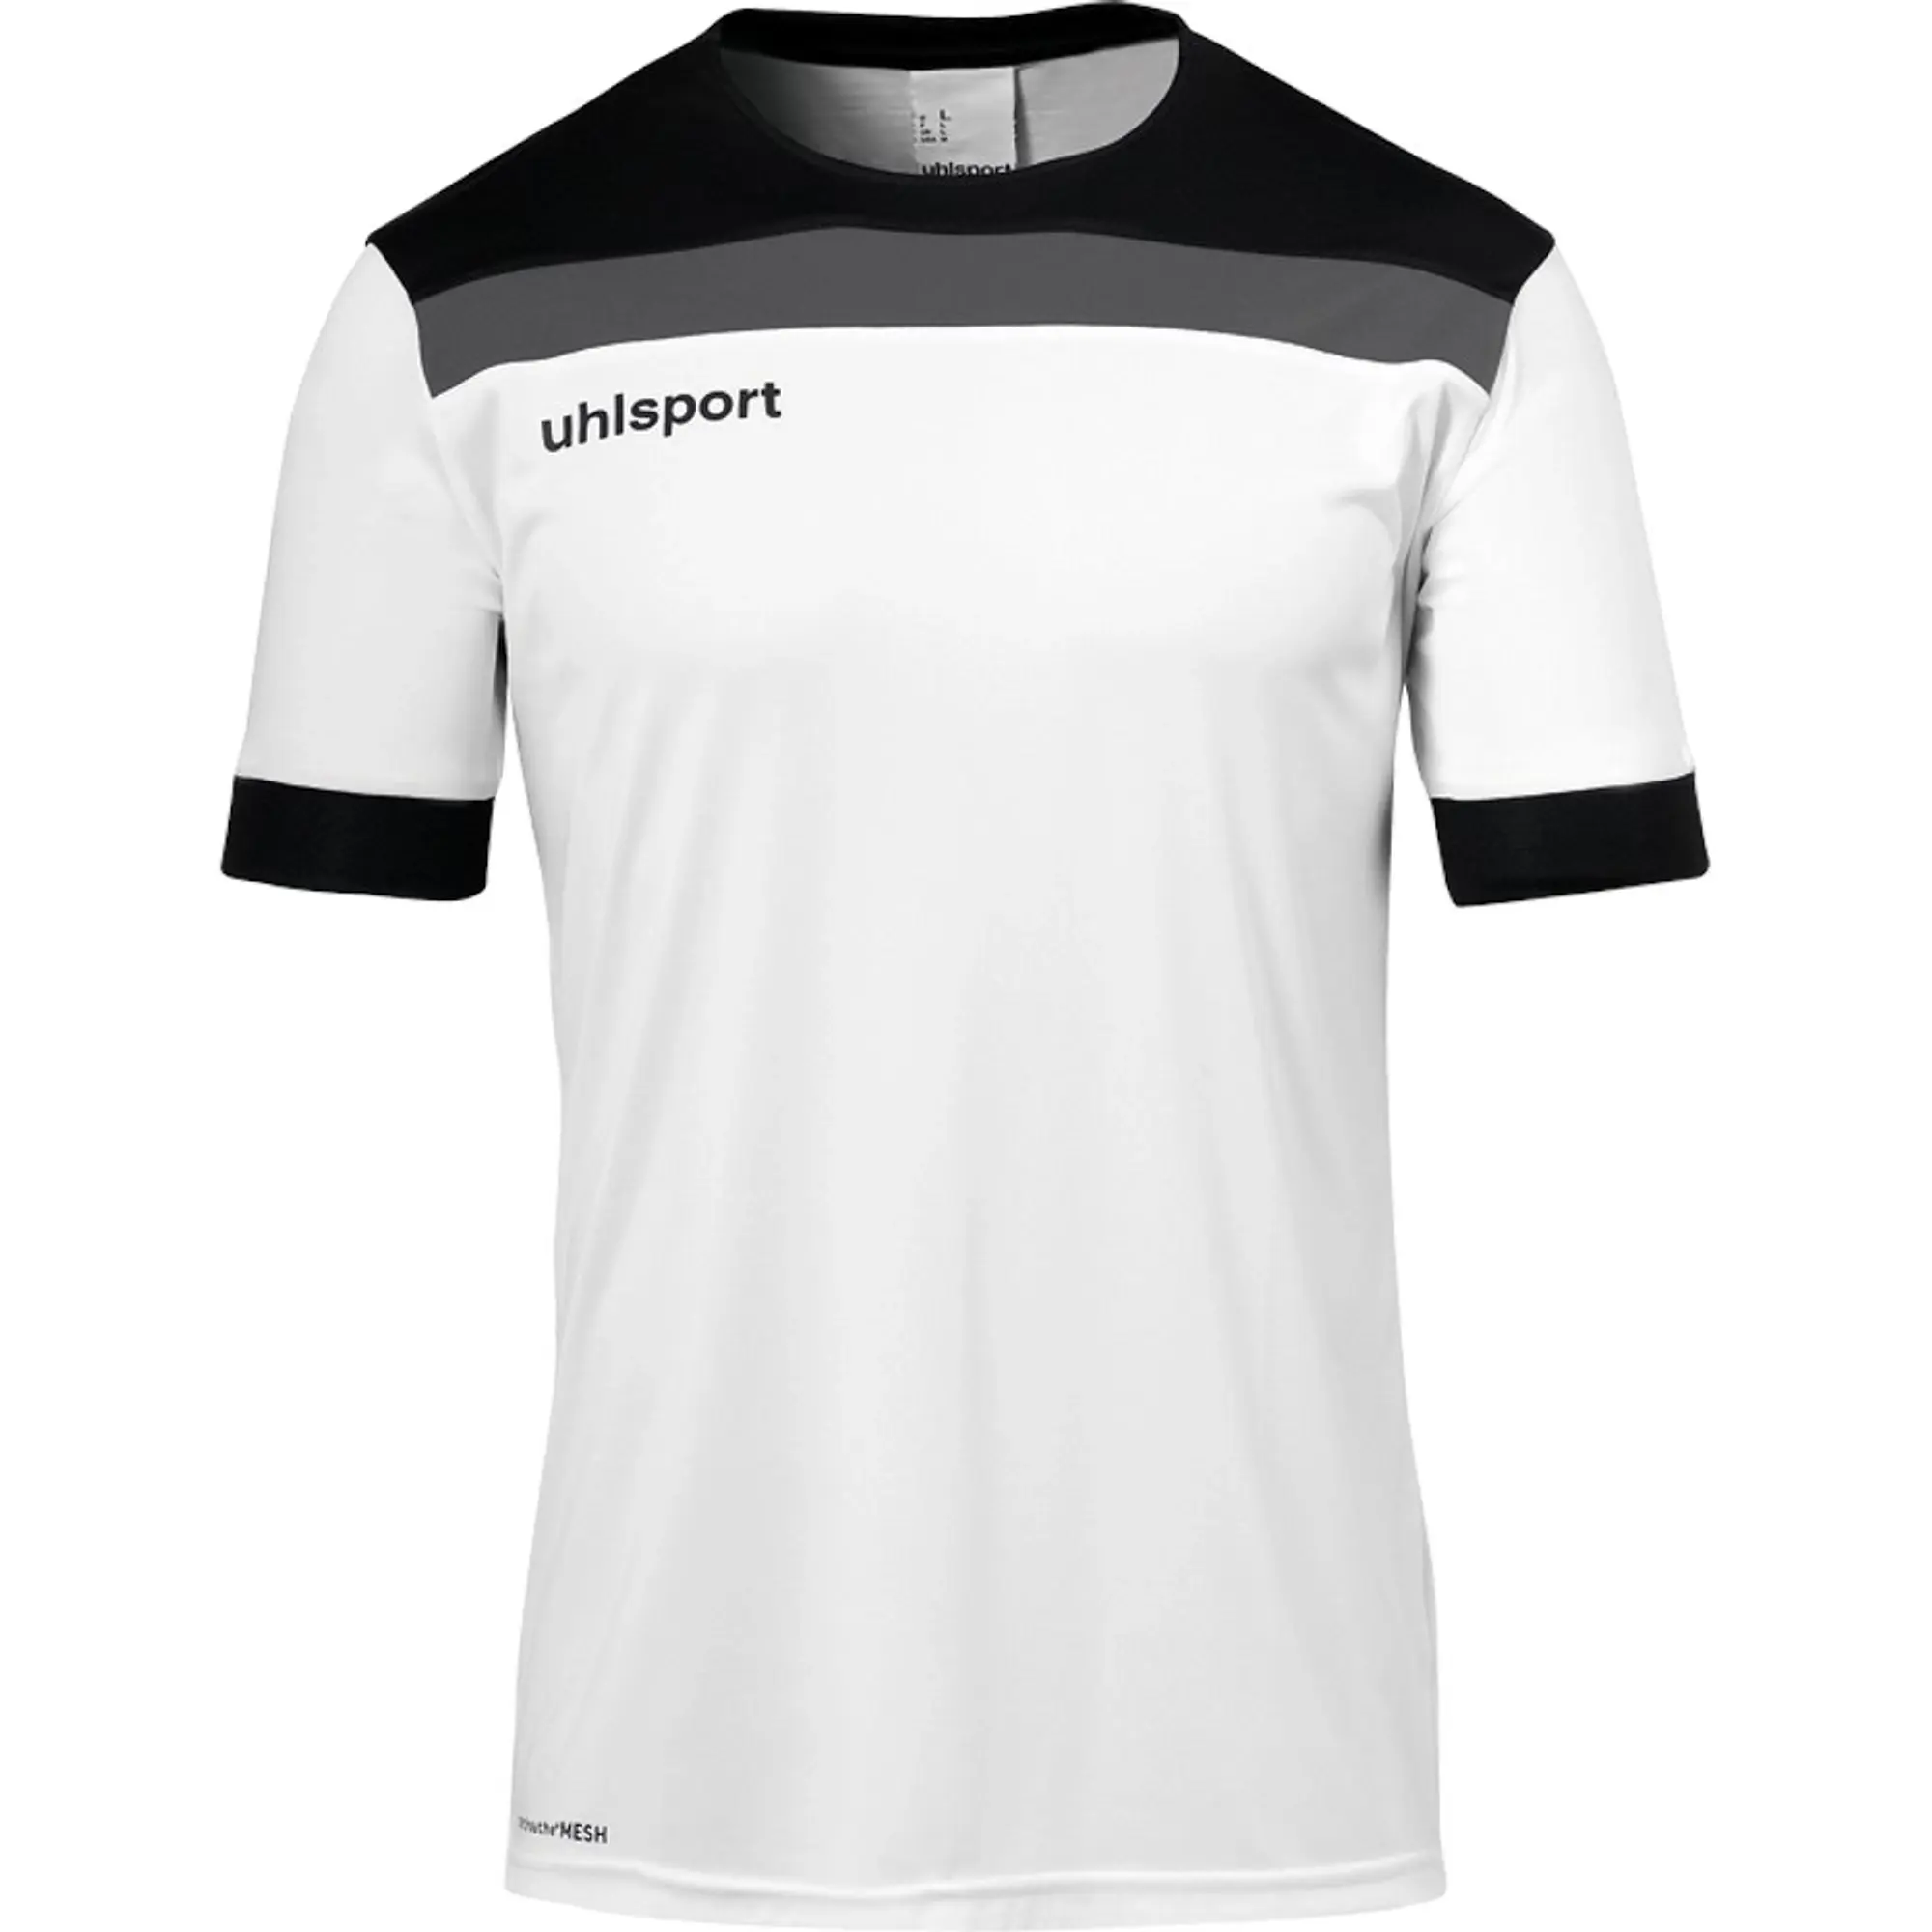 Uhlsport Offense 23 Short Sleeve T-shirt  - White,Black